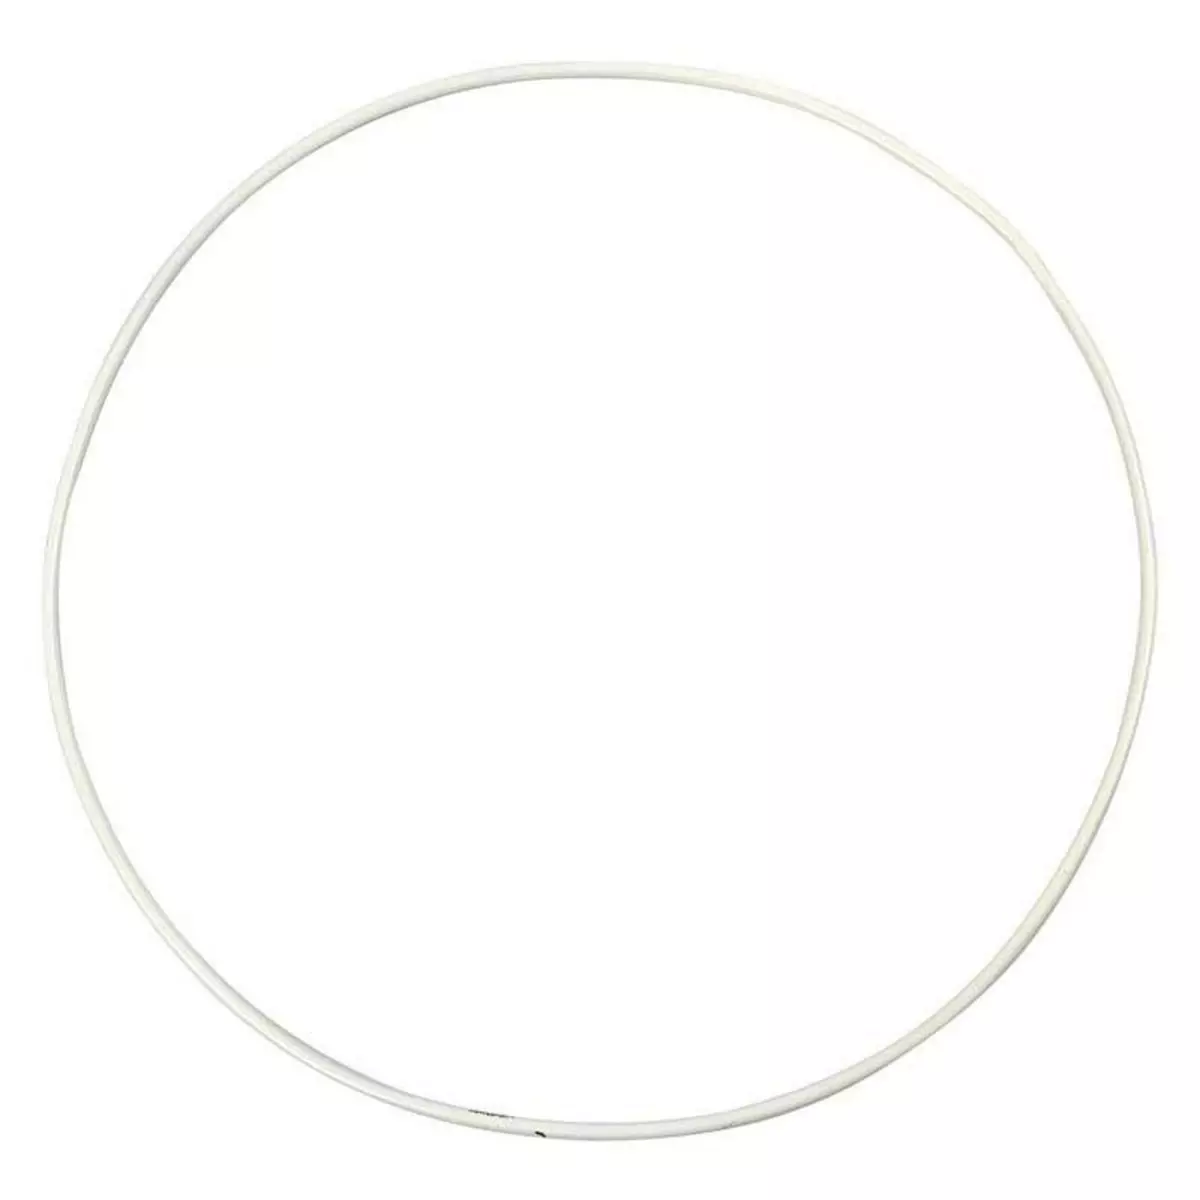  5 cercles en métal blanc - Ø 20 cm